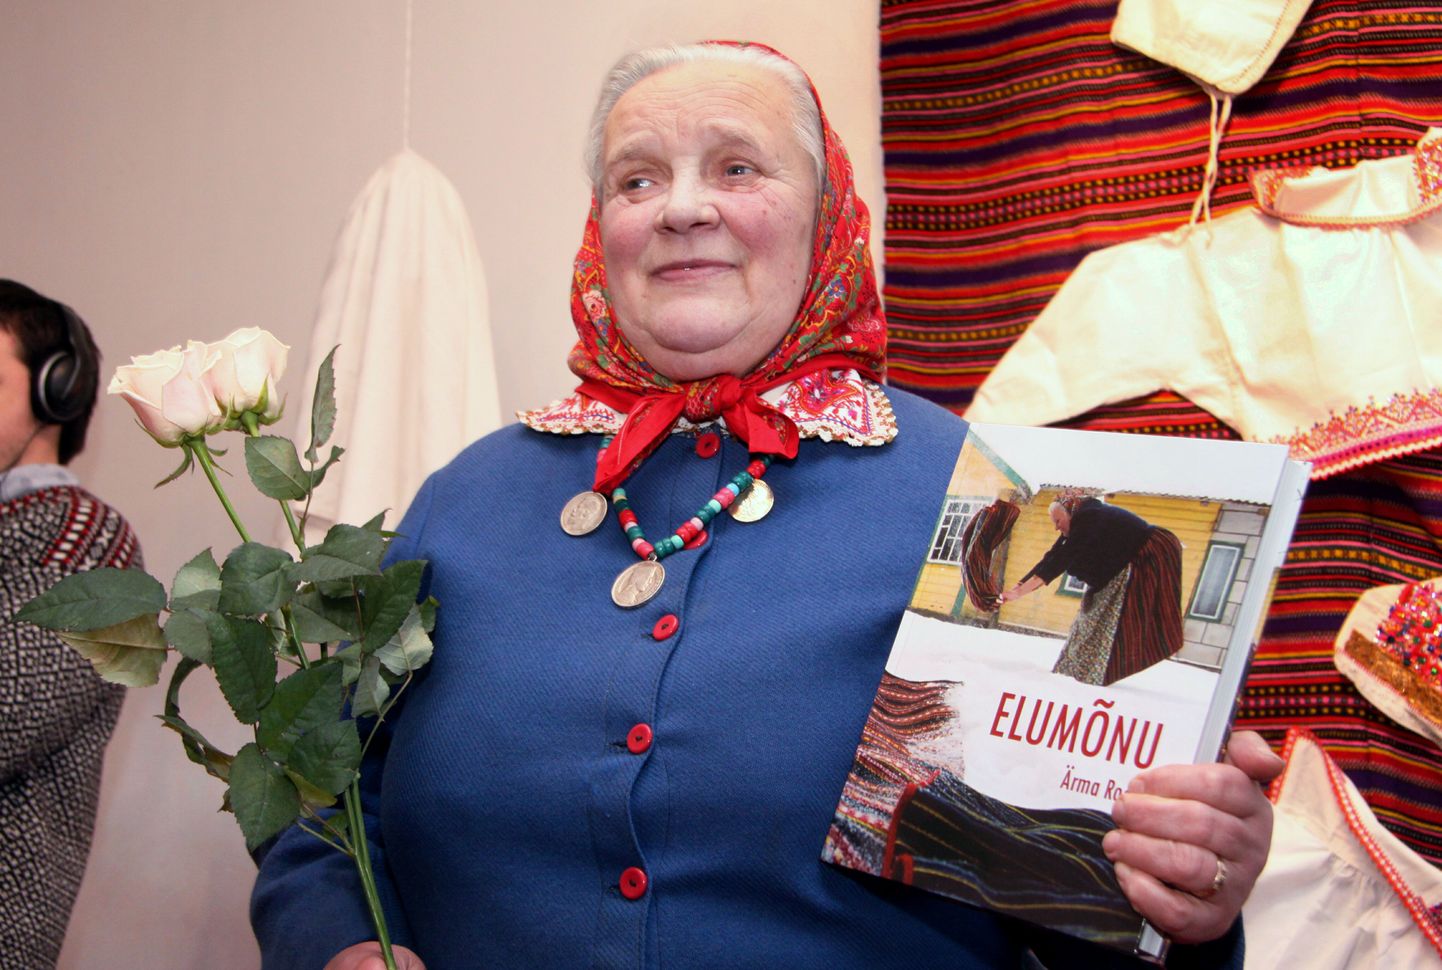 Kihnu käsitöömeister Ärmä Roosi esitles Pärnu Uue Kunsti Muuseumis oma näputöid ja raamatut "Elumõnu"